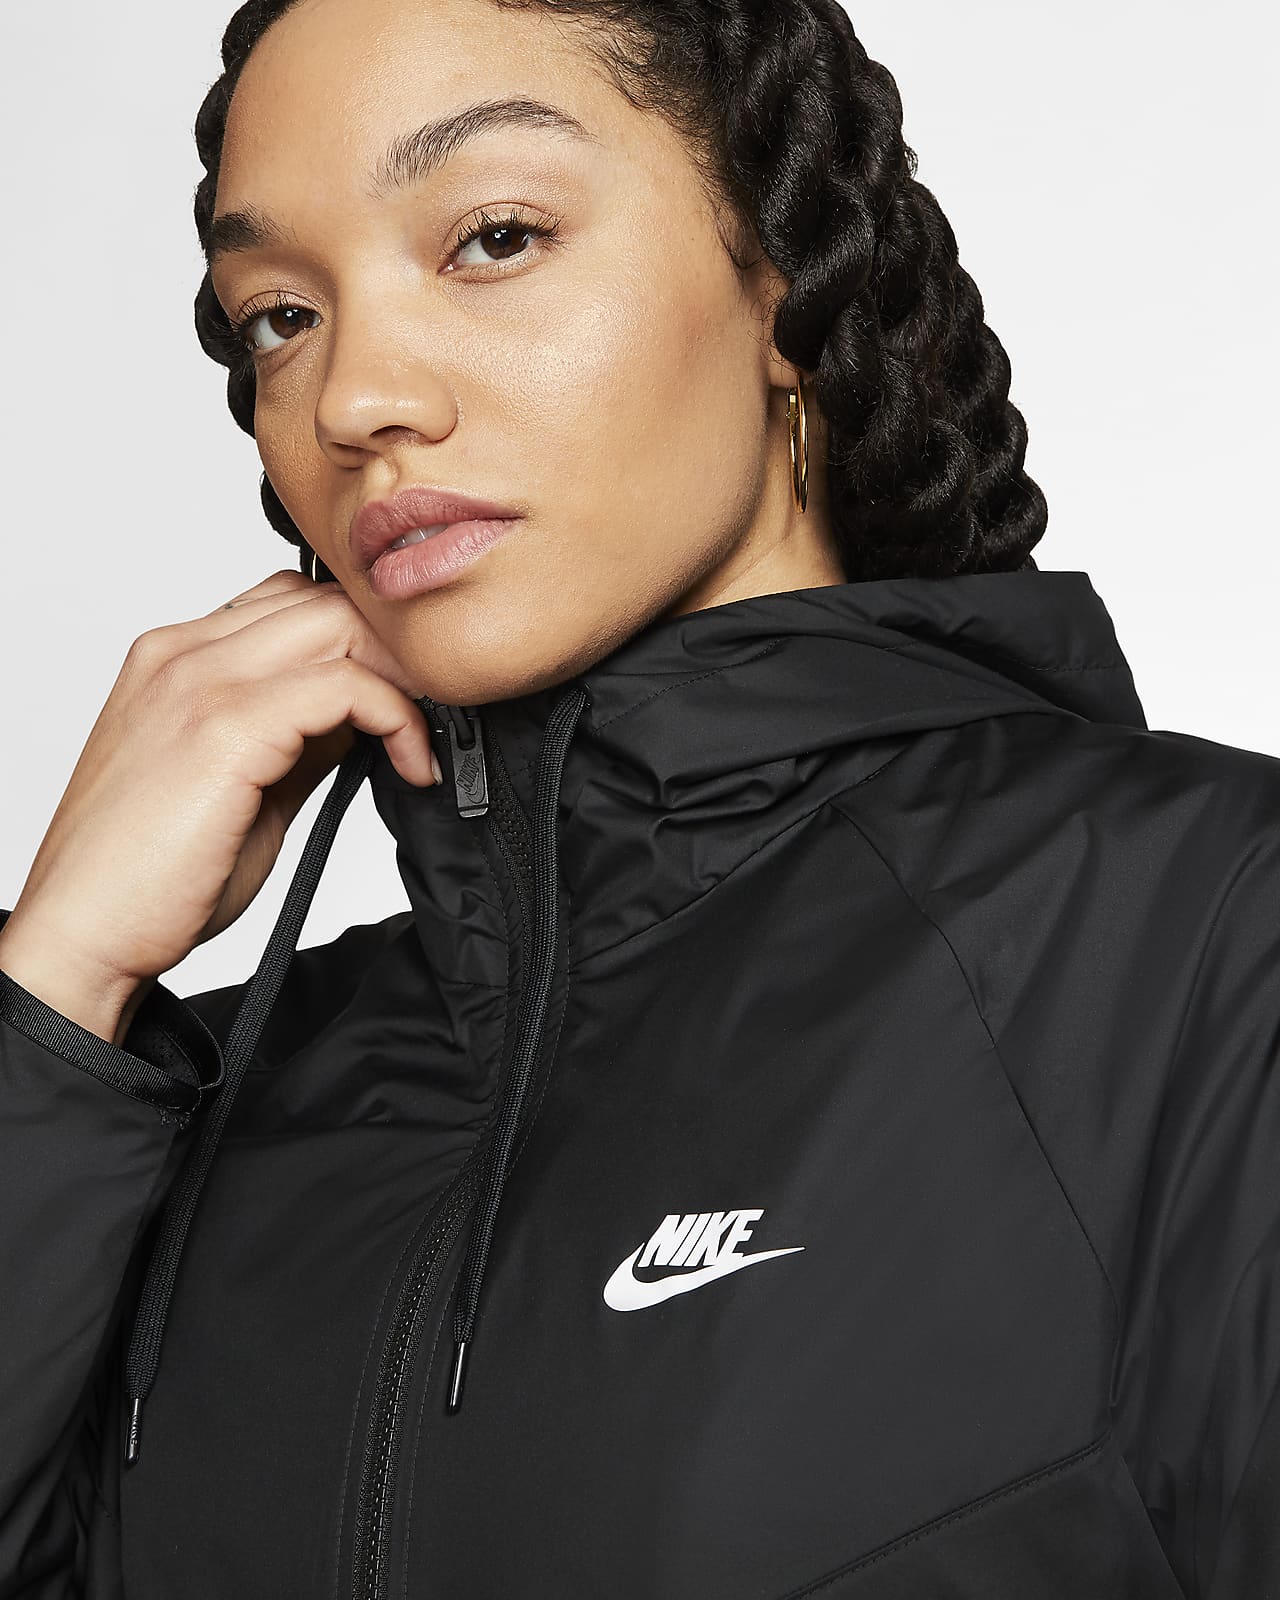 nike sportswear windrunner women's hooded jacket